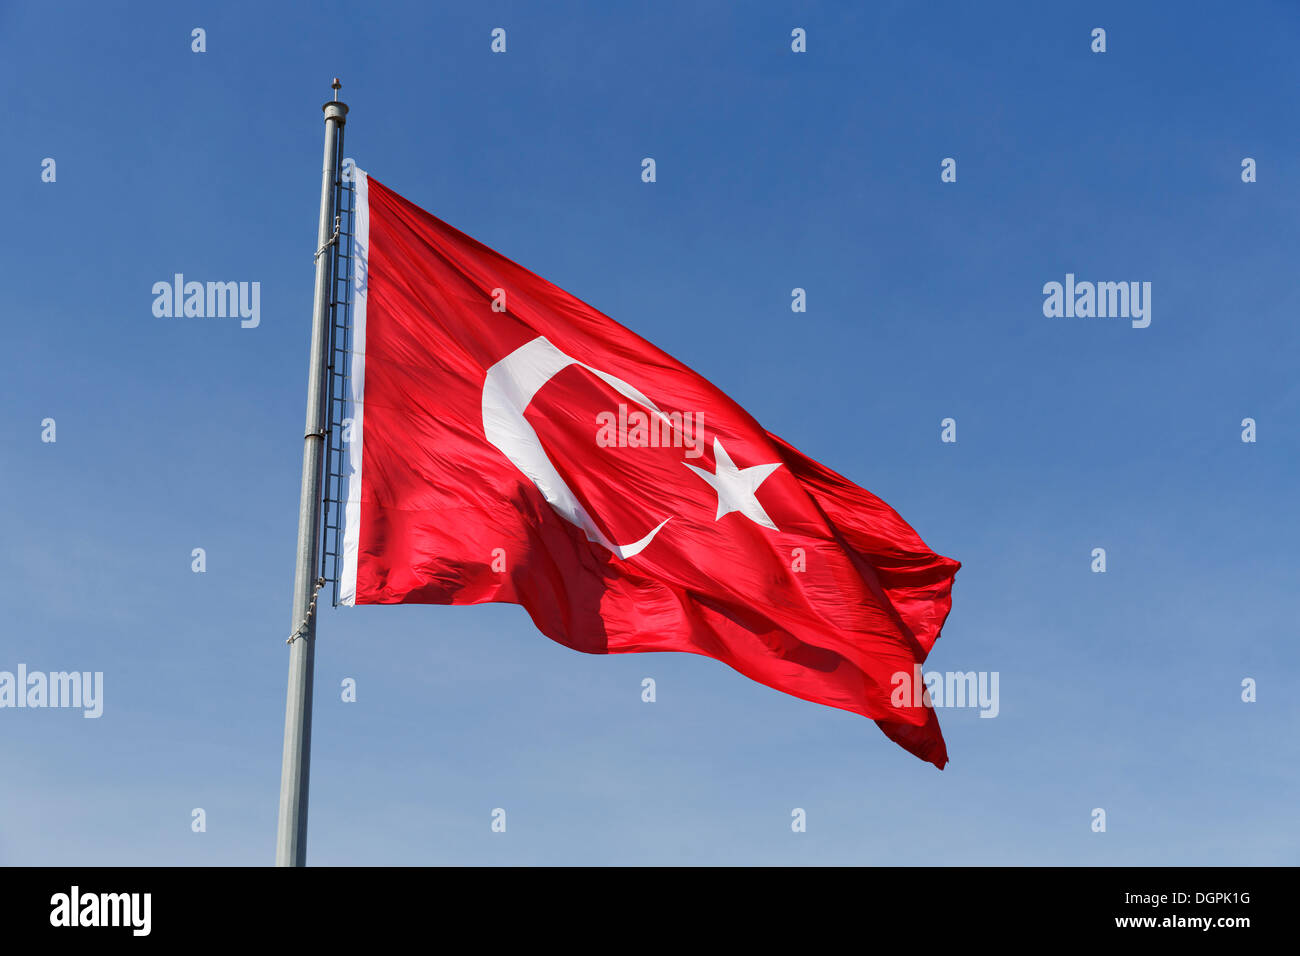 Turkish flag, Kadifekale, Izmir, İzmir Province, Aegean Region, Turkey Stock Photo